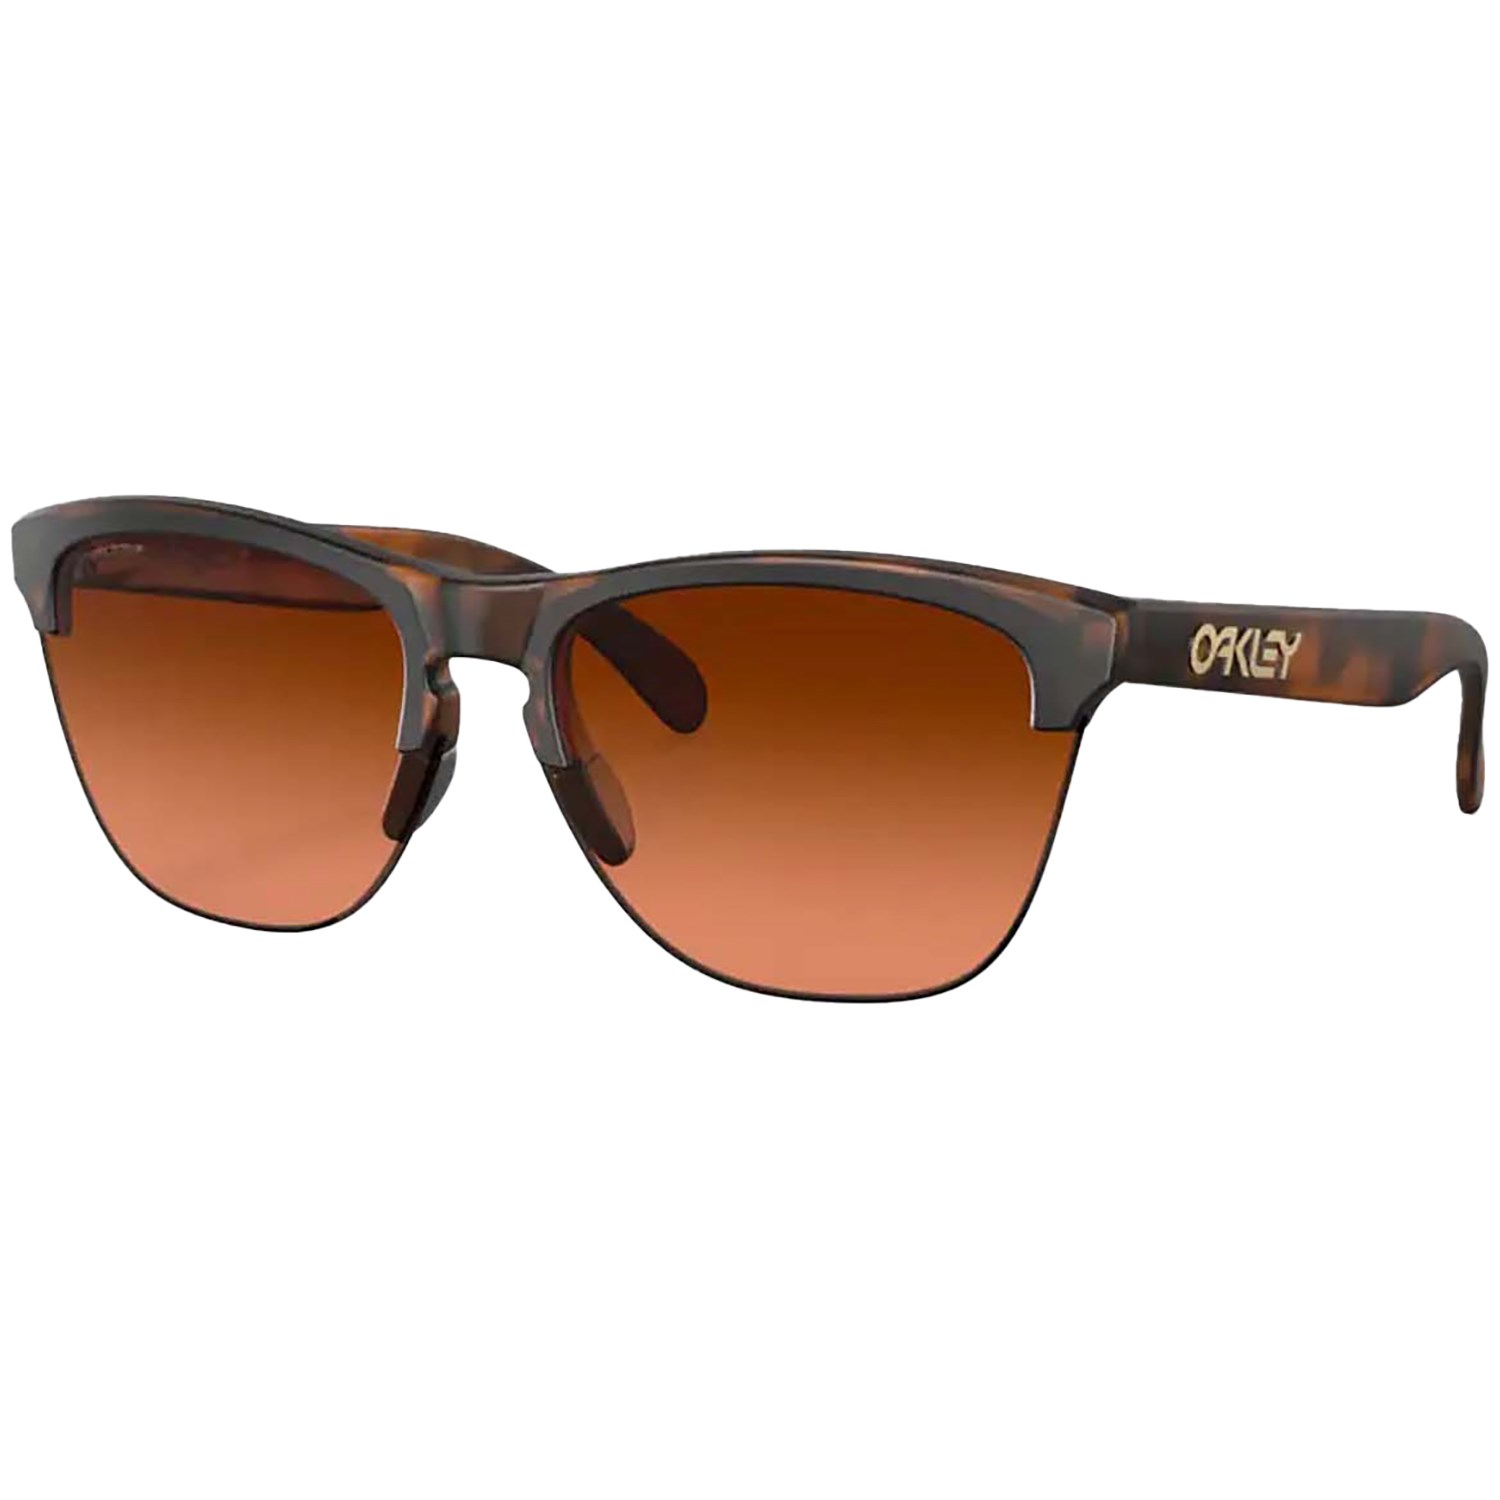 Солнцезащитные очки Oakley Frogskins Lite, коричневый цена и фото